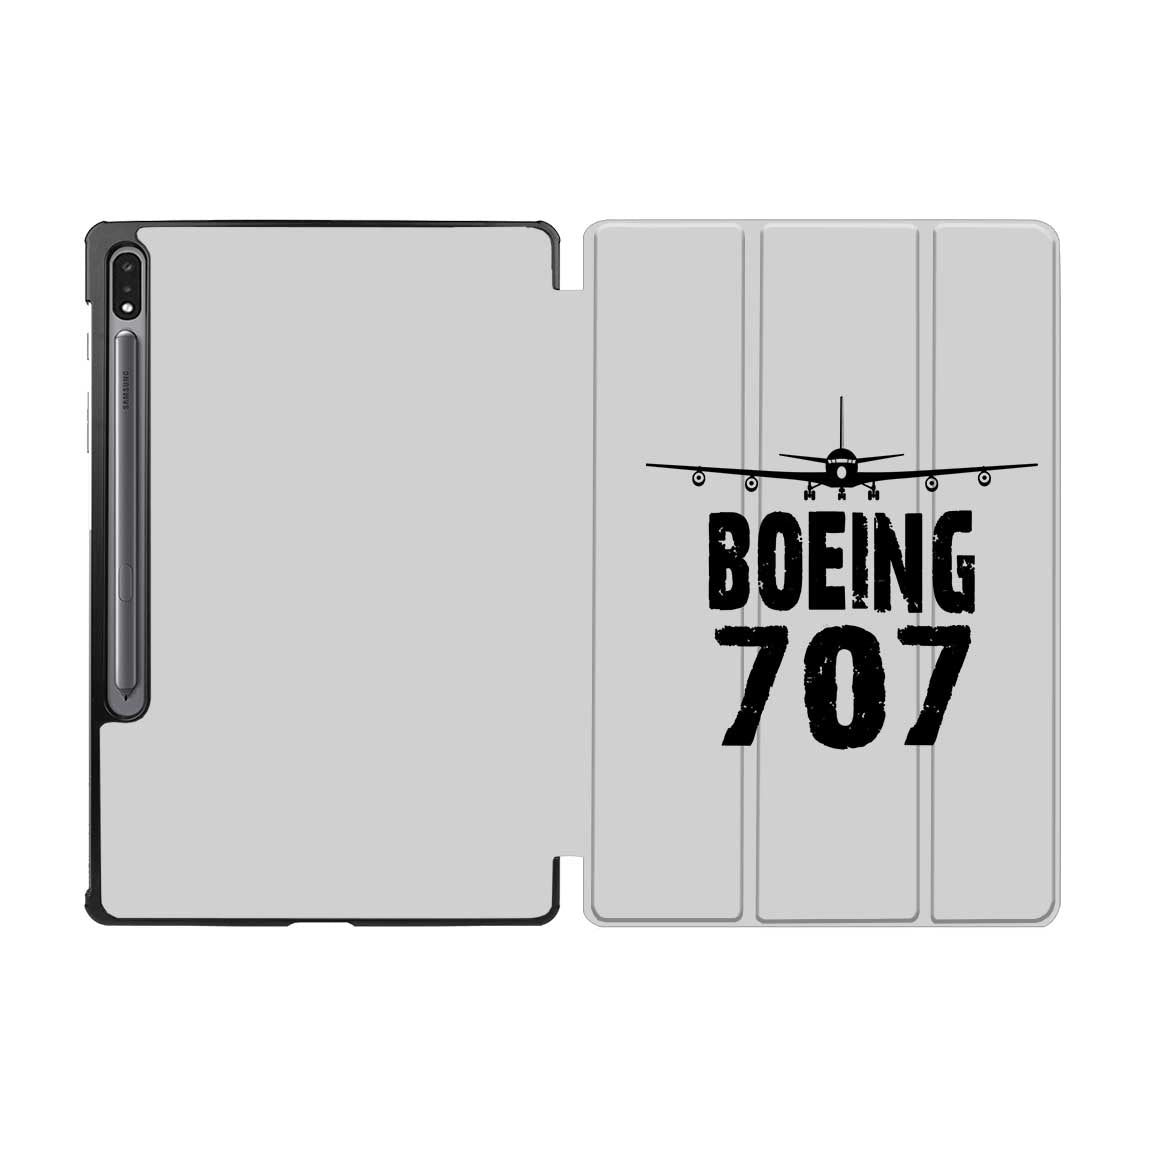 Boeing 707 & Plane Designed Samsung Tablet Cases